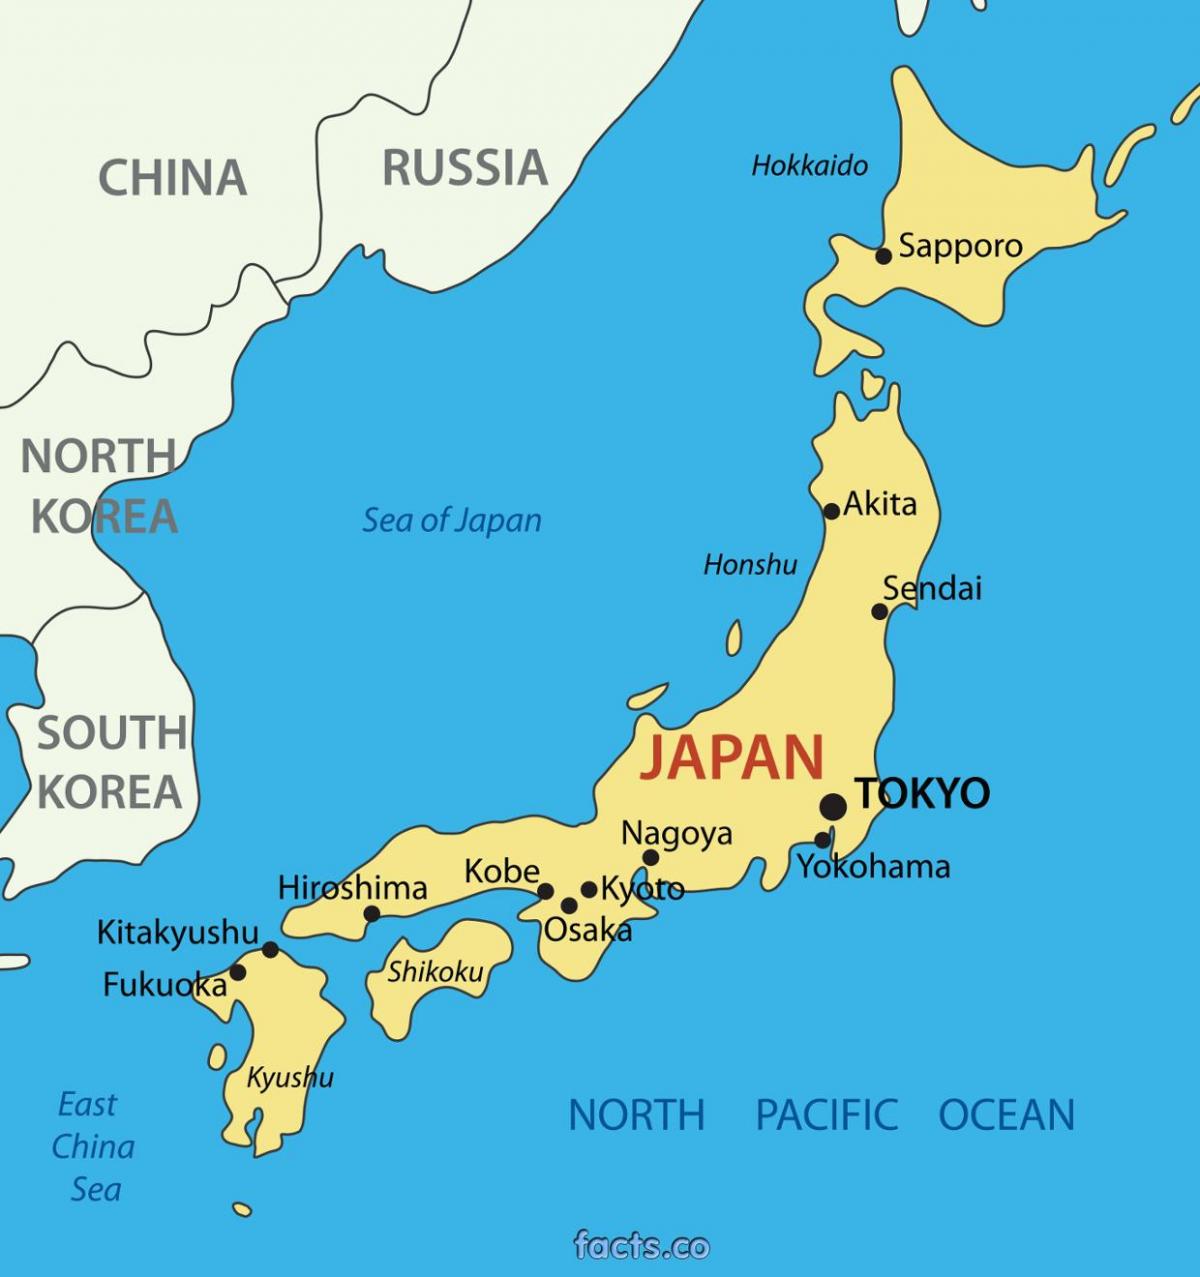 Tokio ubicación en el mapa